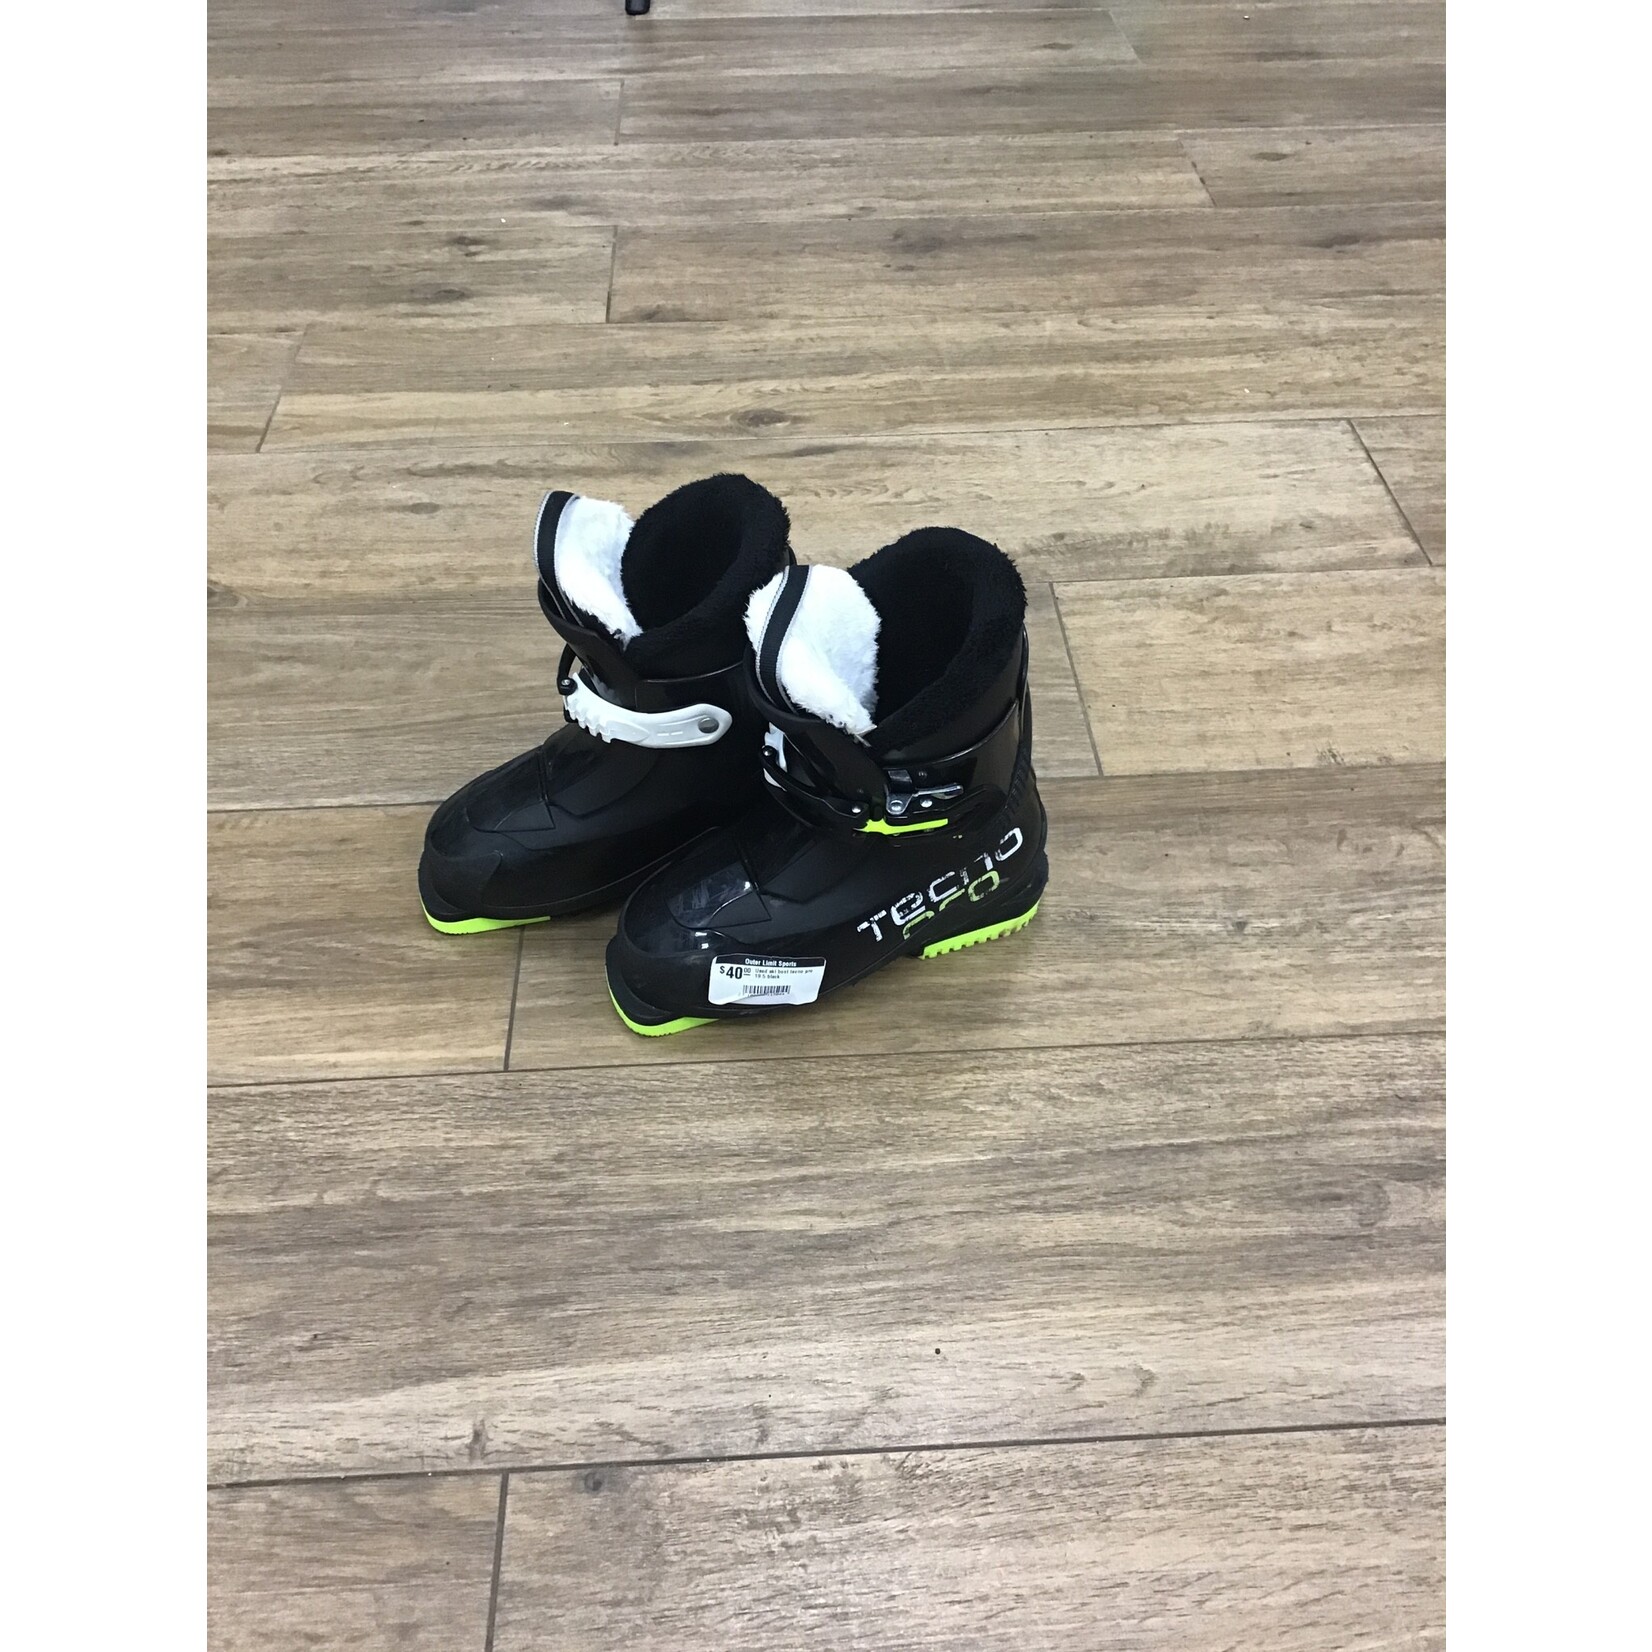 Used ski boot tecno pro 19.5 black